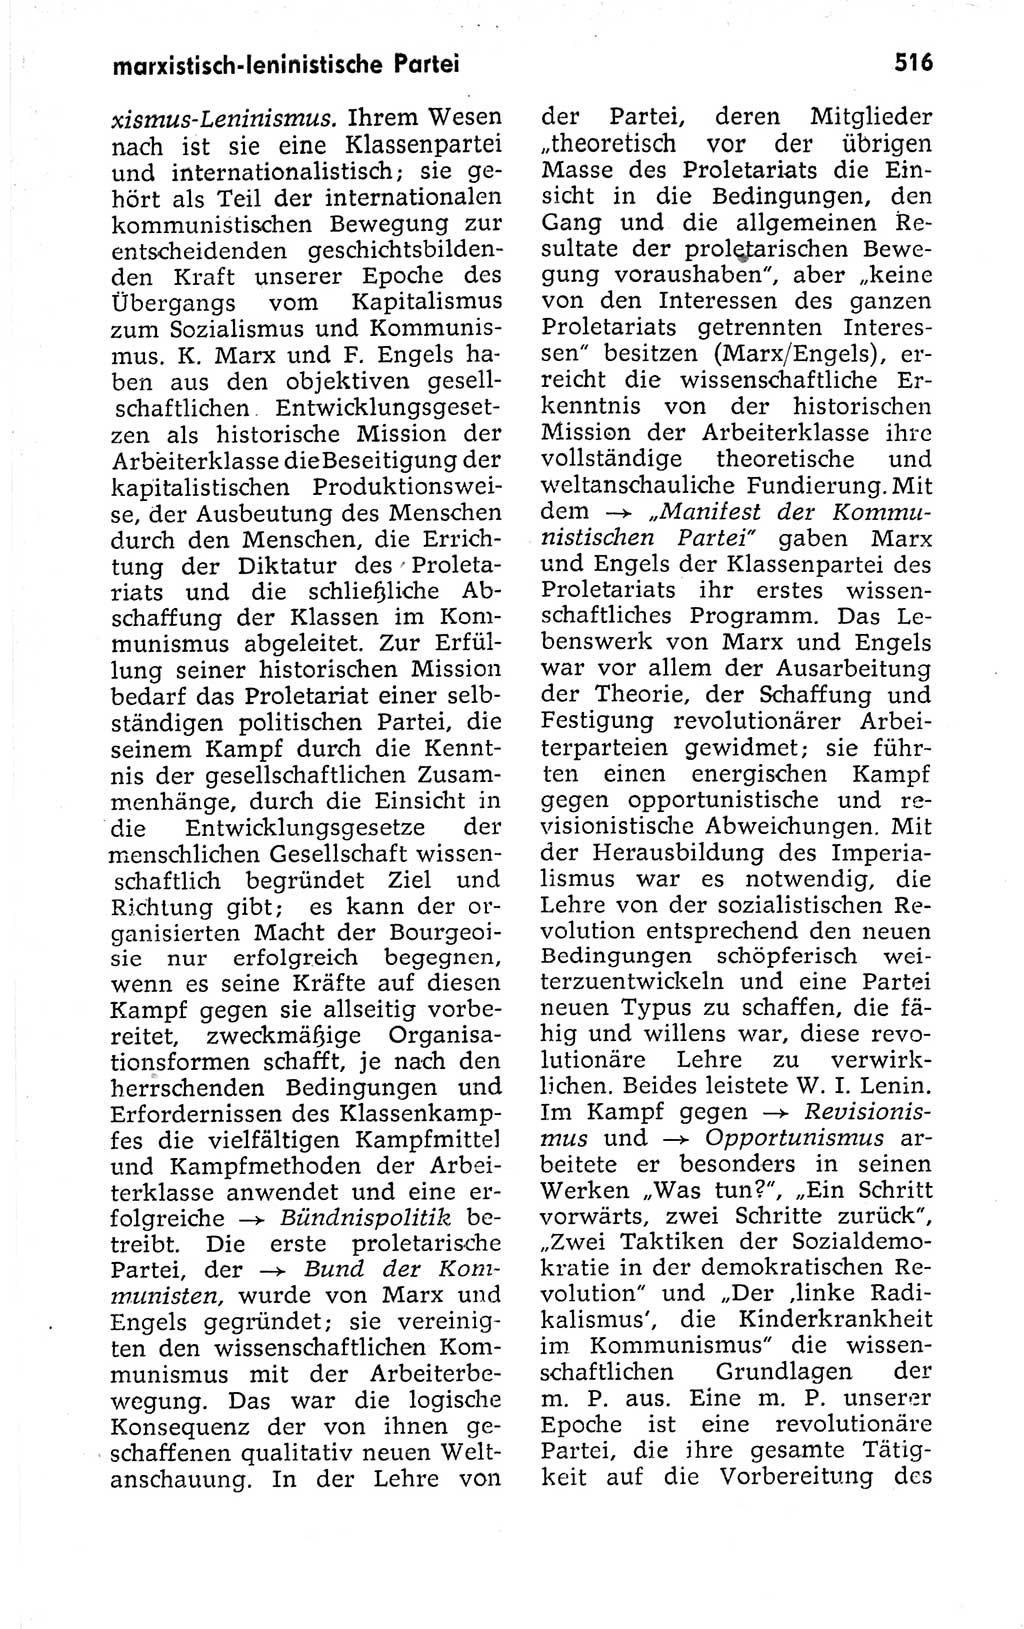 Kleines politisches Wörterbuch [Deutsche Demokratische Republik (DDR)] 1973, Seite 516 (Kl. pol. Wb. DDR 1973, S. 516)